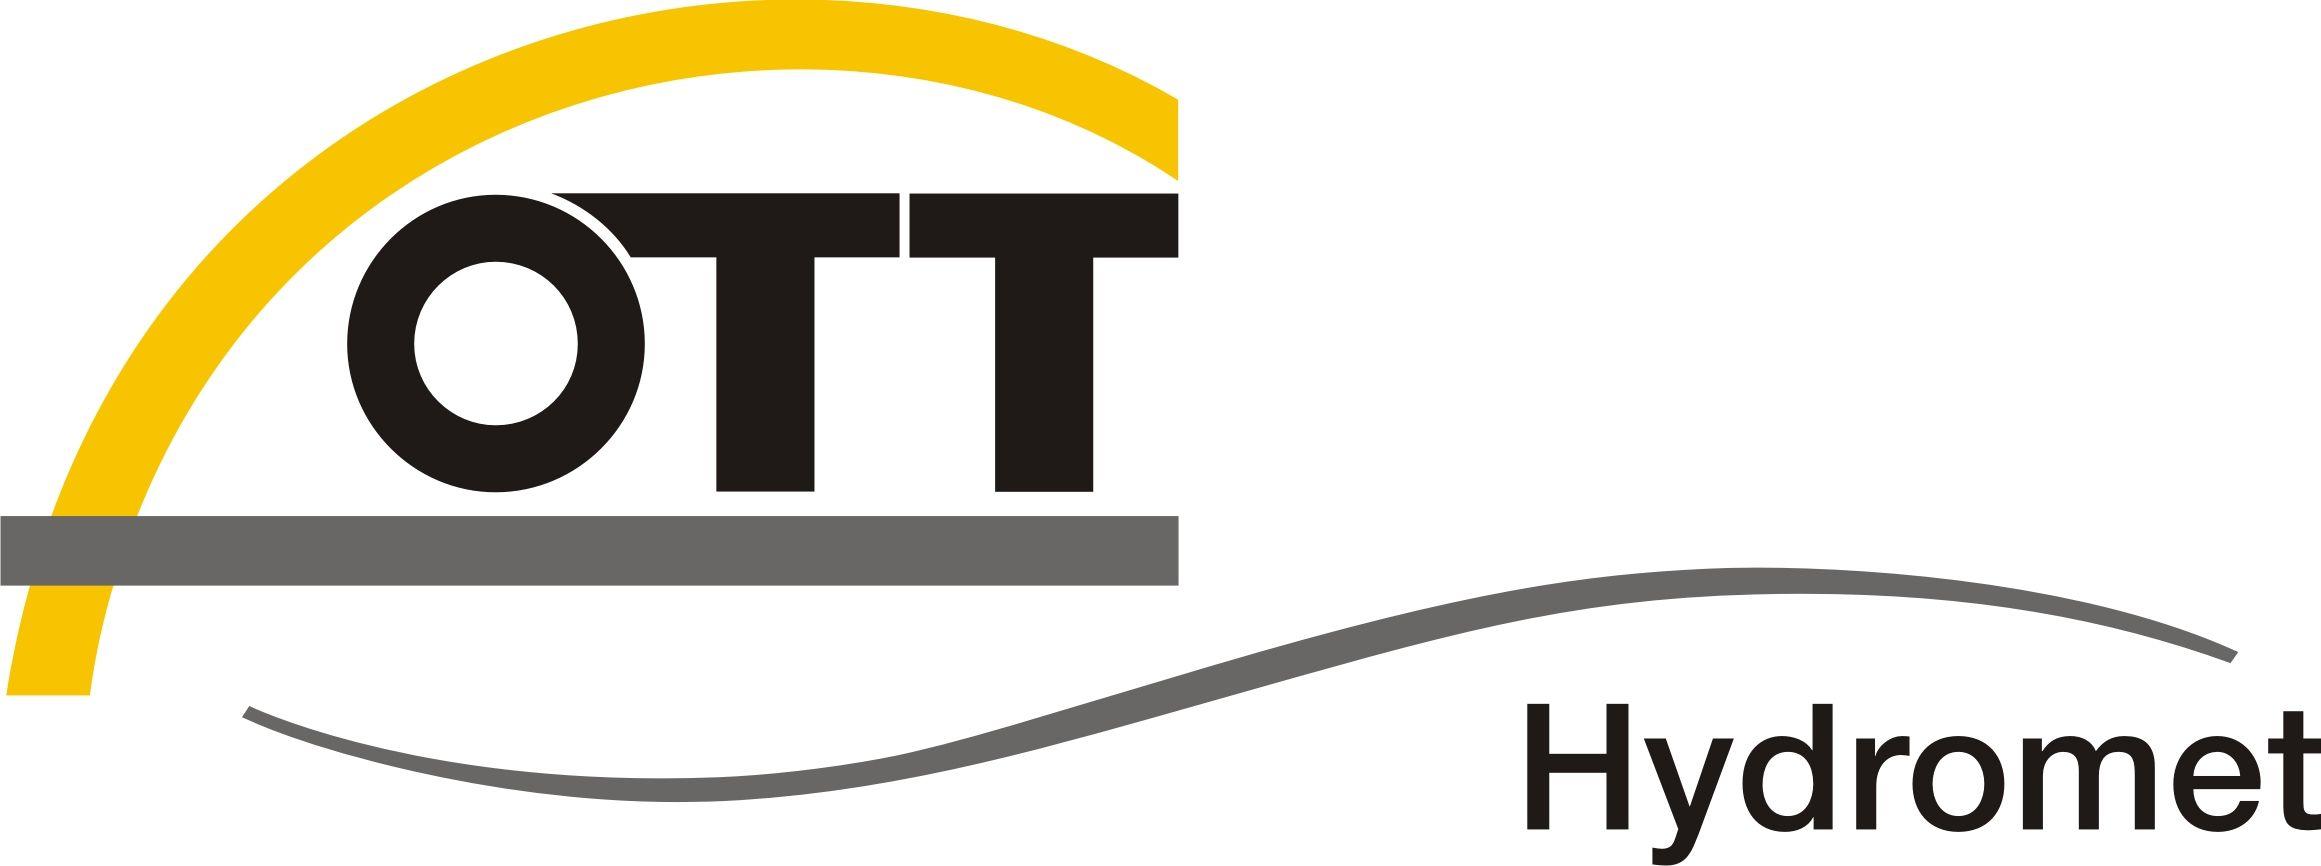 Ott Logo - File:Logo Ott Hydromet.jpg - Wikimedia Commons